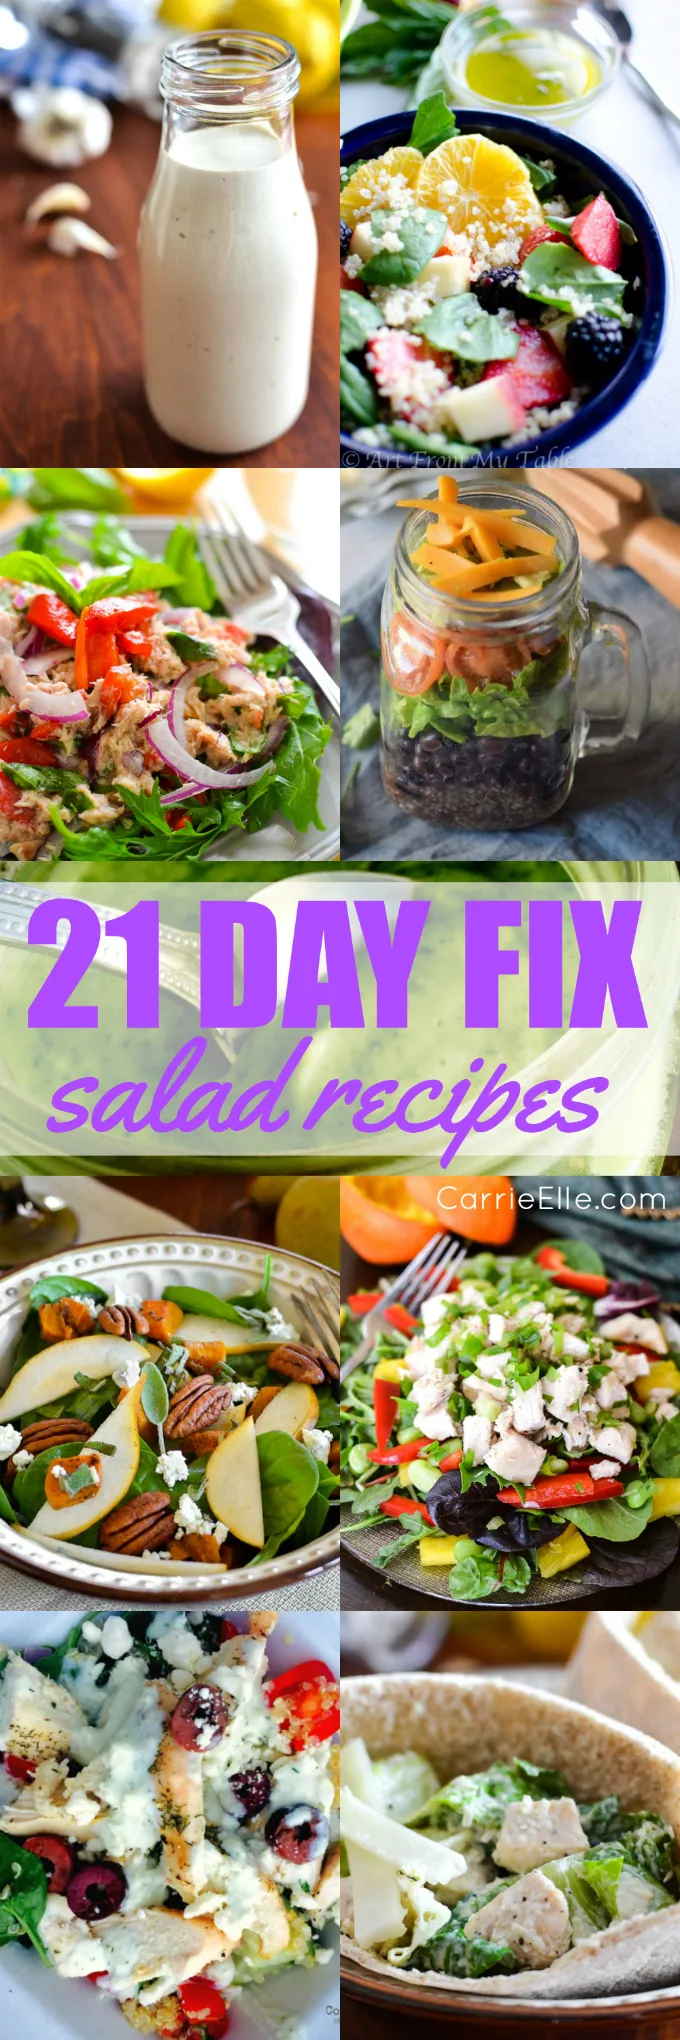 21 Day Fix Salad Recipes